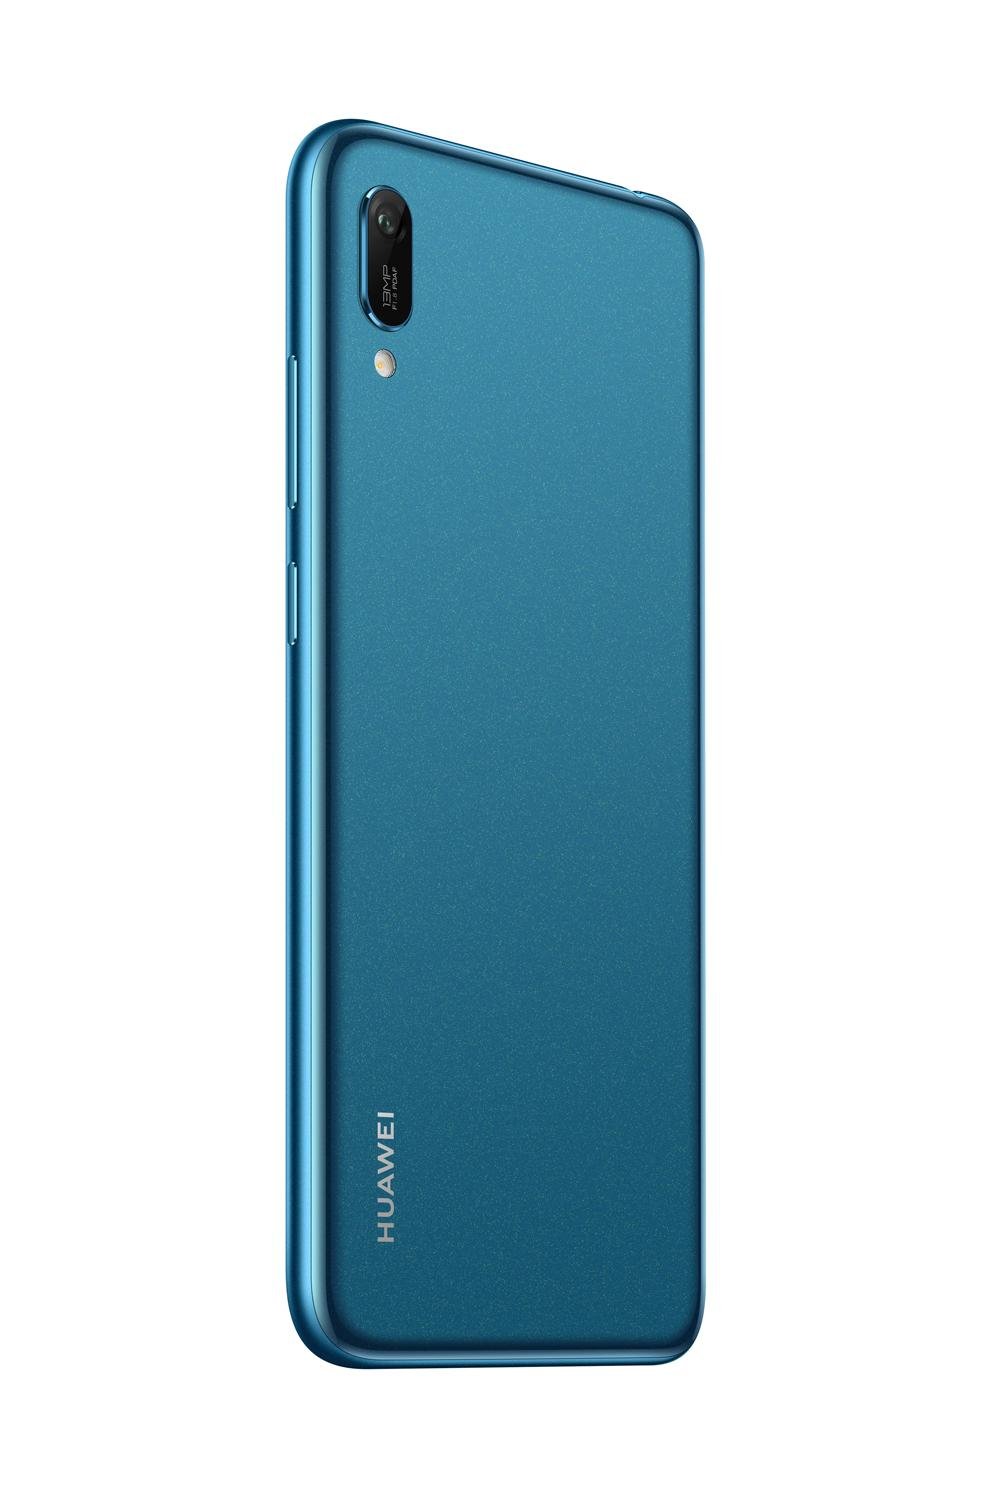 Vervorming herwinnen Memo Huawei Y6 Pro (2019) specs, review, release date - PhonesData